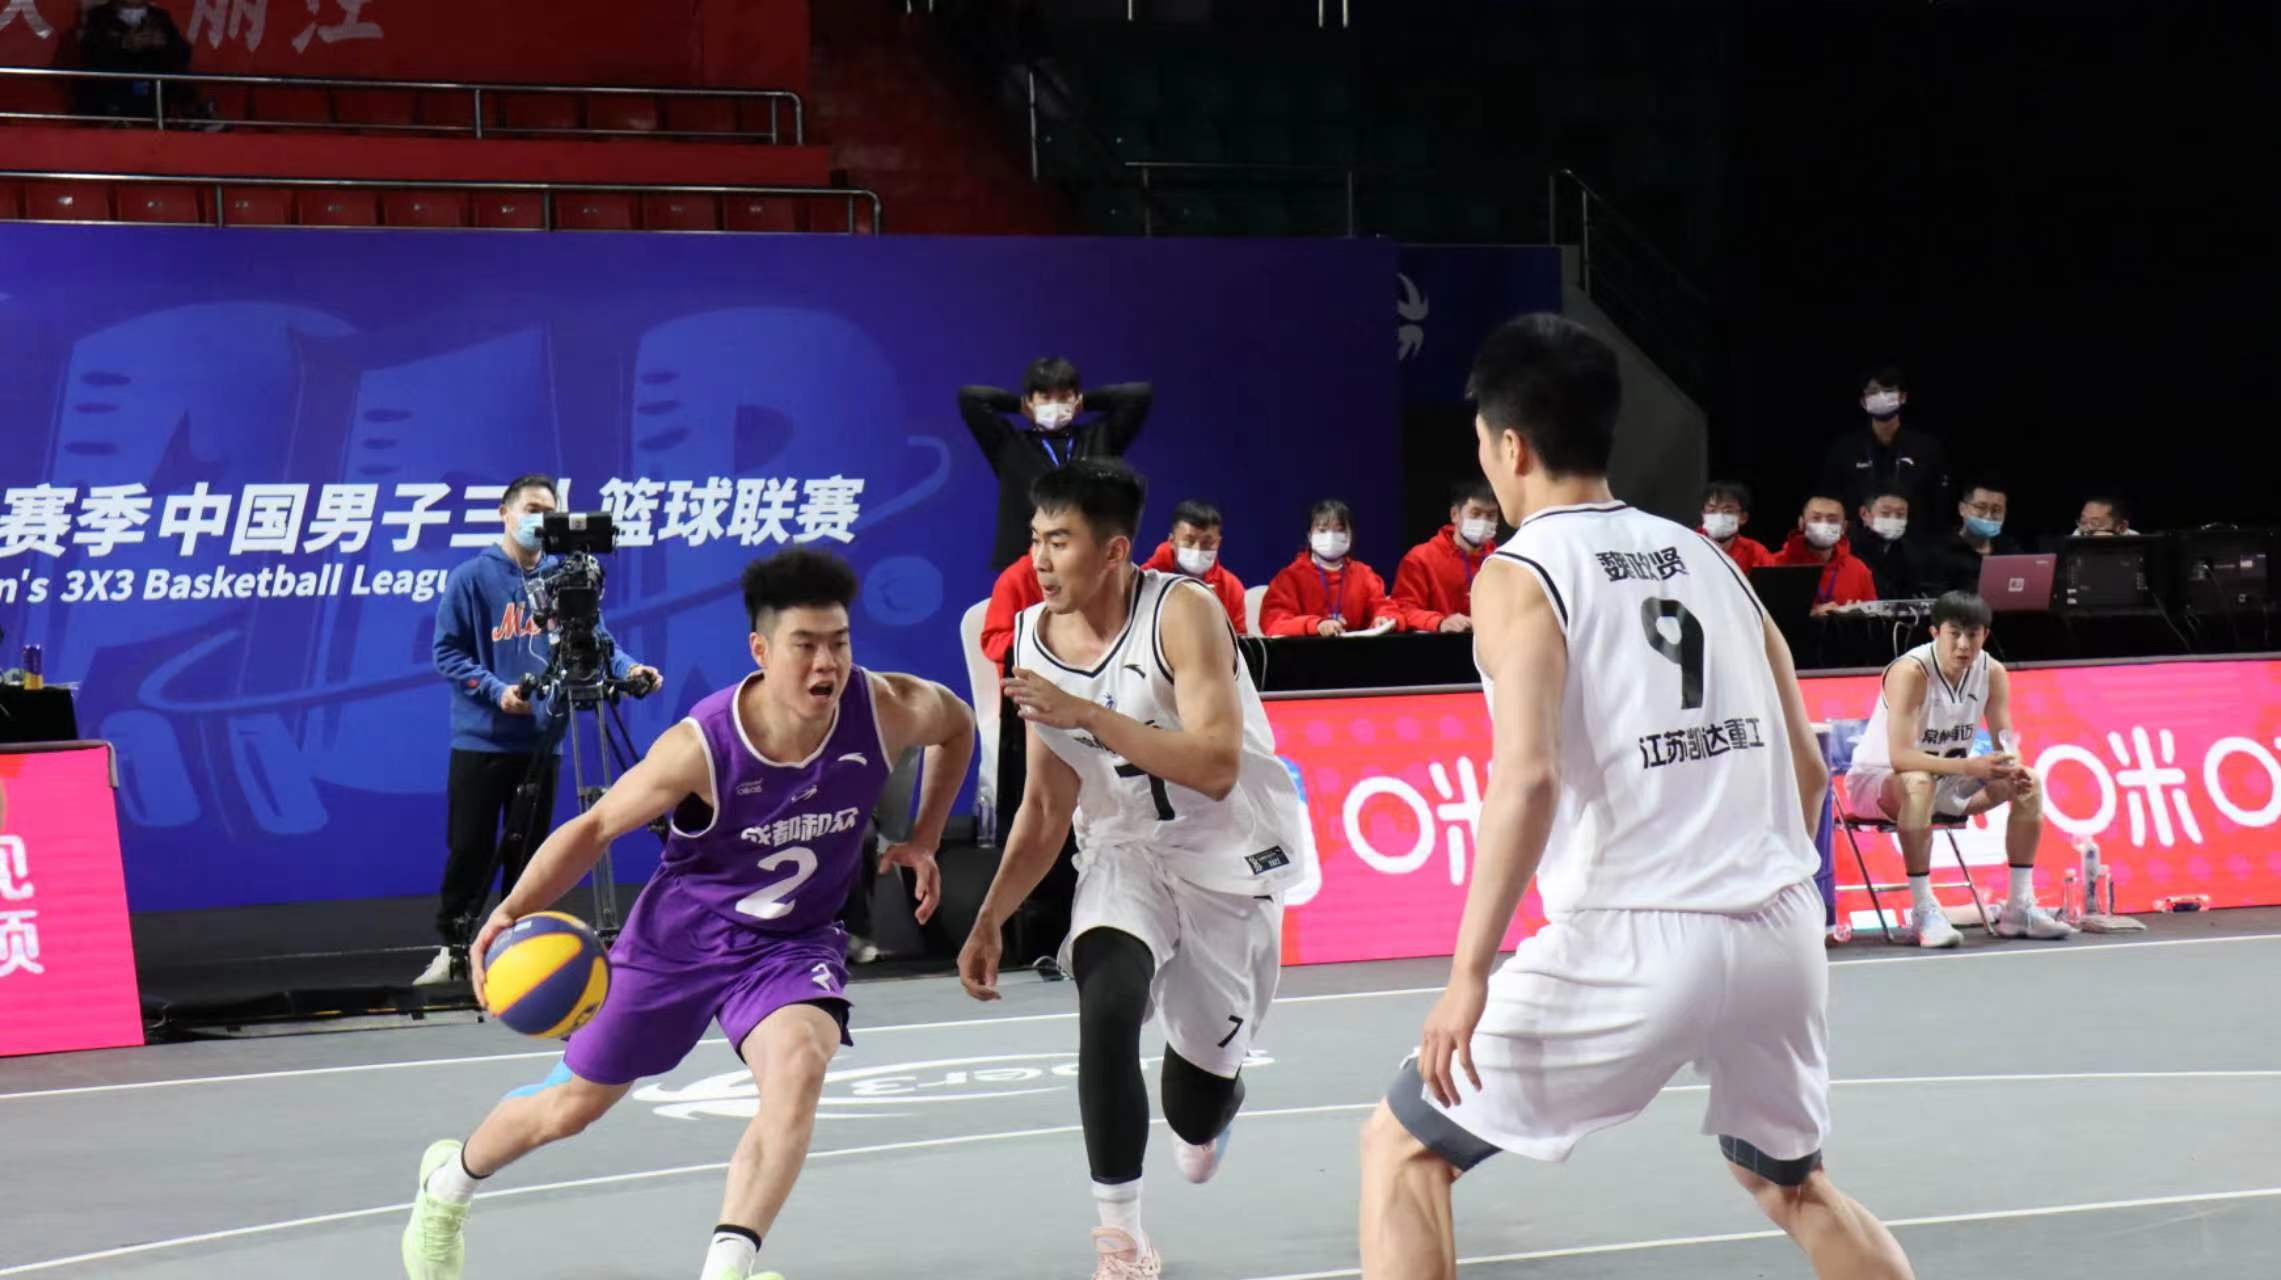 2022赛季中国男子三人篮球超级联赛在丽江开赛！